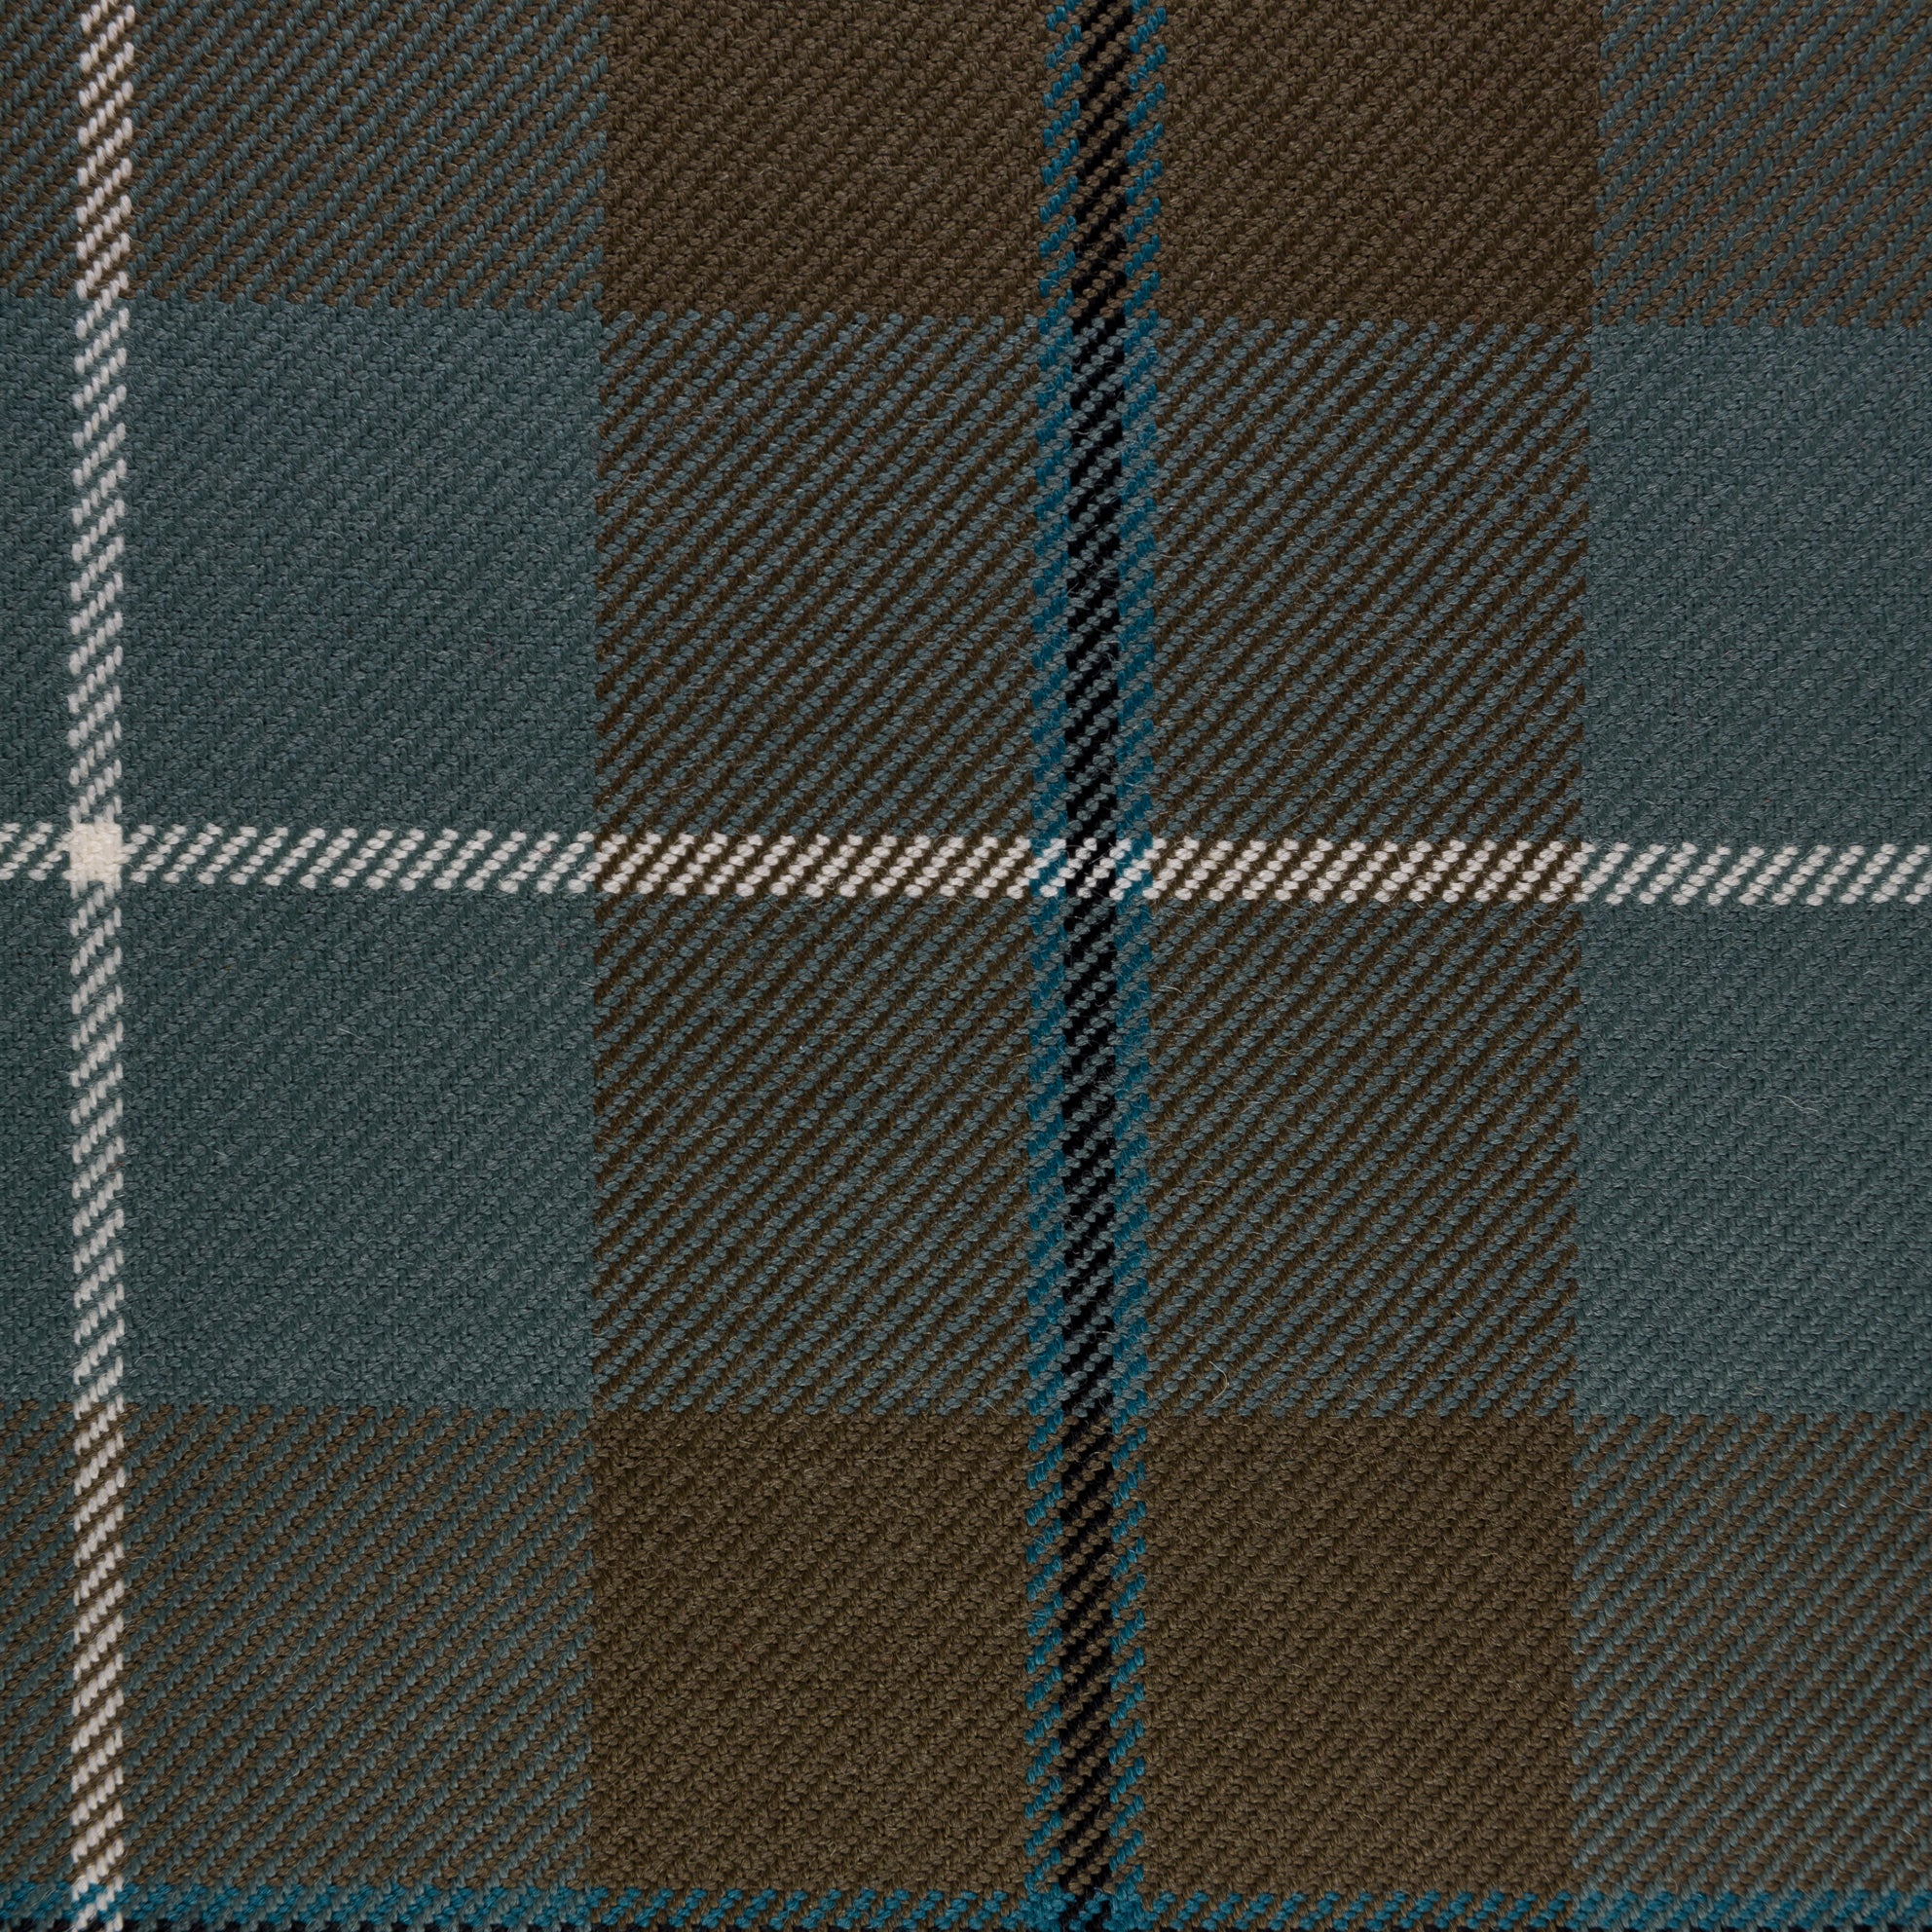 Tartan Fabric - Douglas Green Muted | Nicholas Engert Interiors